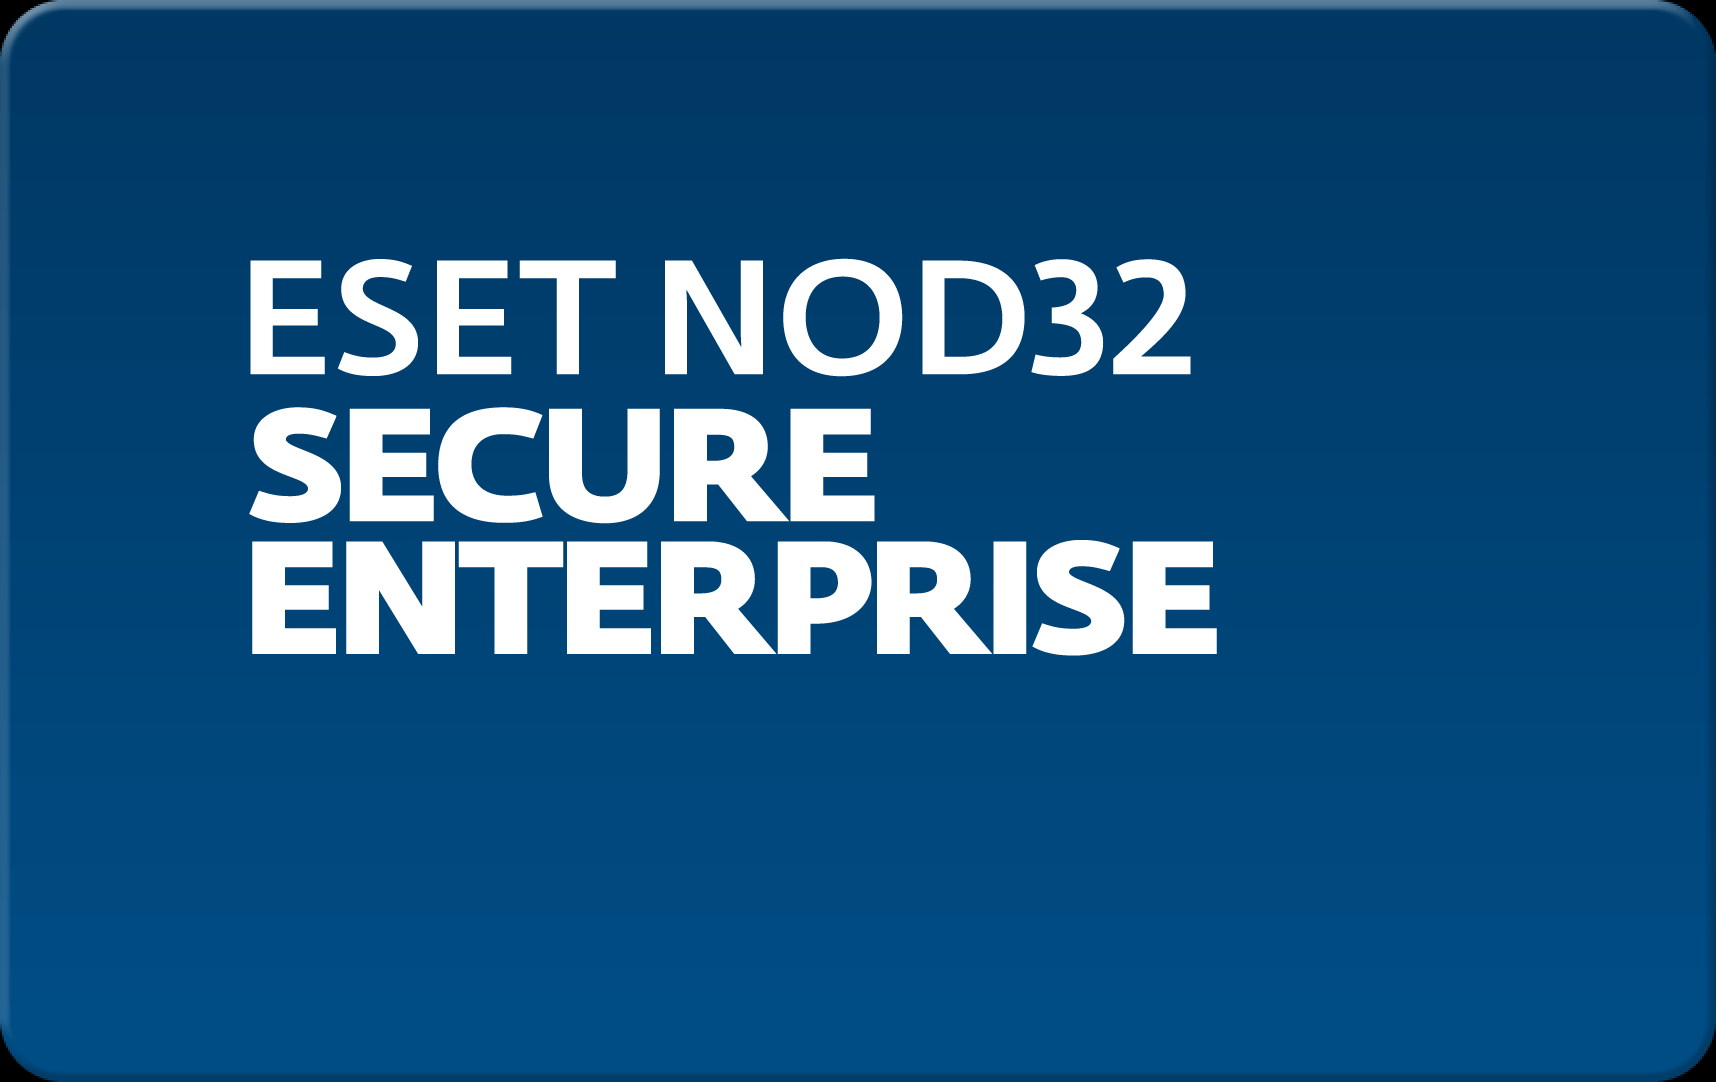        Eset NOD32 Secure Enterprise  193  NOD32-ESE-NS-1-193  #1